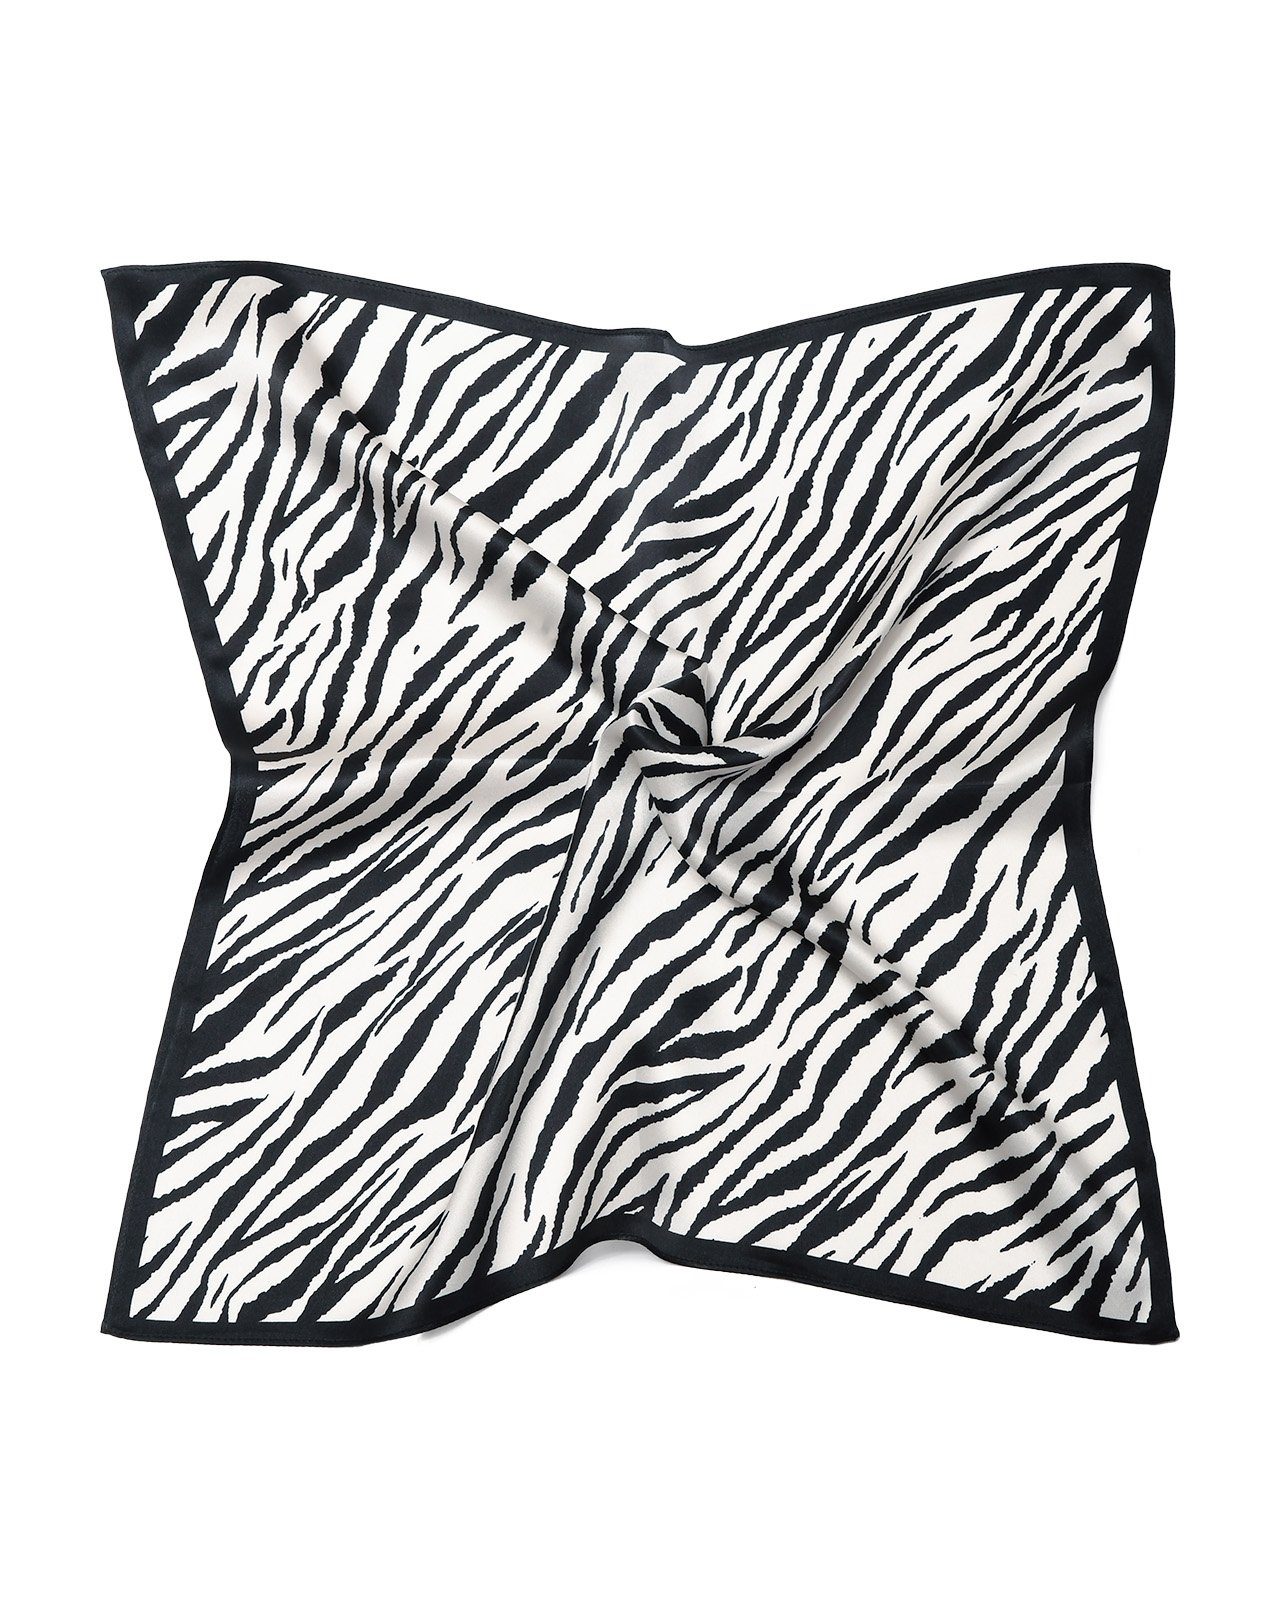 MayTree Seidentuch quadratisch,Zebra, 53x53 cm, schwarz weiß, Nickituch, Bandana-Schal, (Stück), 100% Seide